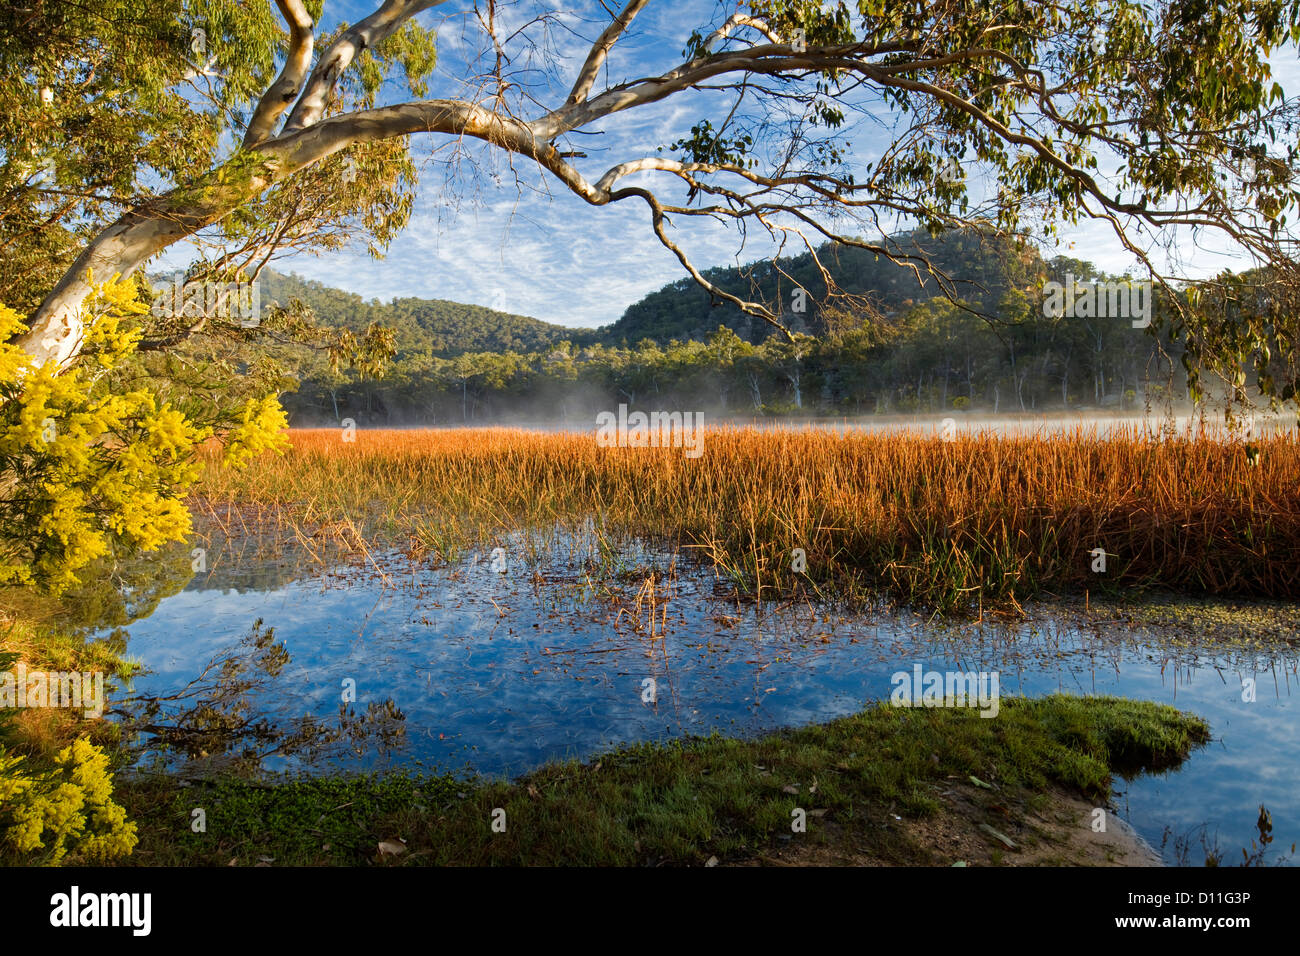 Paysage avec wattle / Acacia fleurs et de brume du matin calme sur le lac bleu à Dunns, marais du parc national Wollemi, NSW Australie Banque D'Images